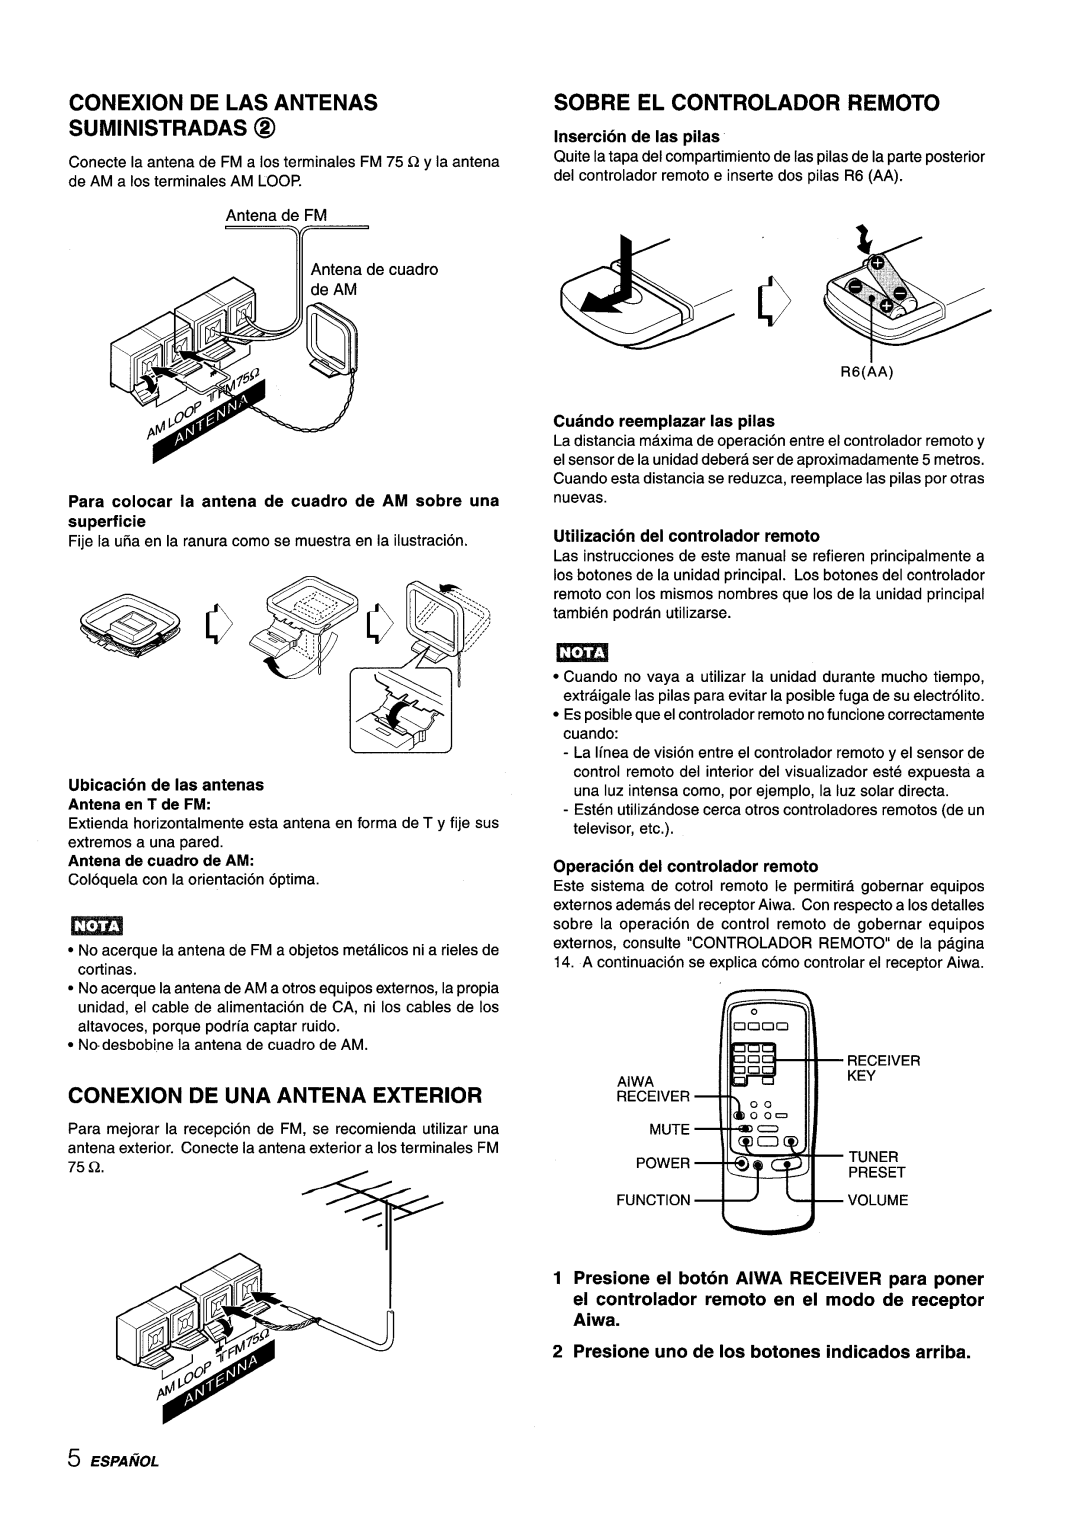 Aiwa AV-X220 manual ‘uNcT’ONvvOLuM, Conexion De Las Antenas Suministradas @, Sobre El Controlador Remoto, superficie 